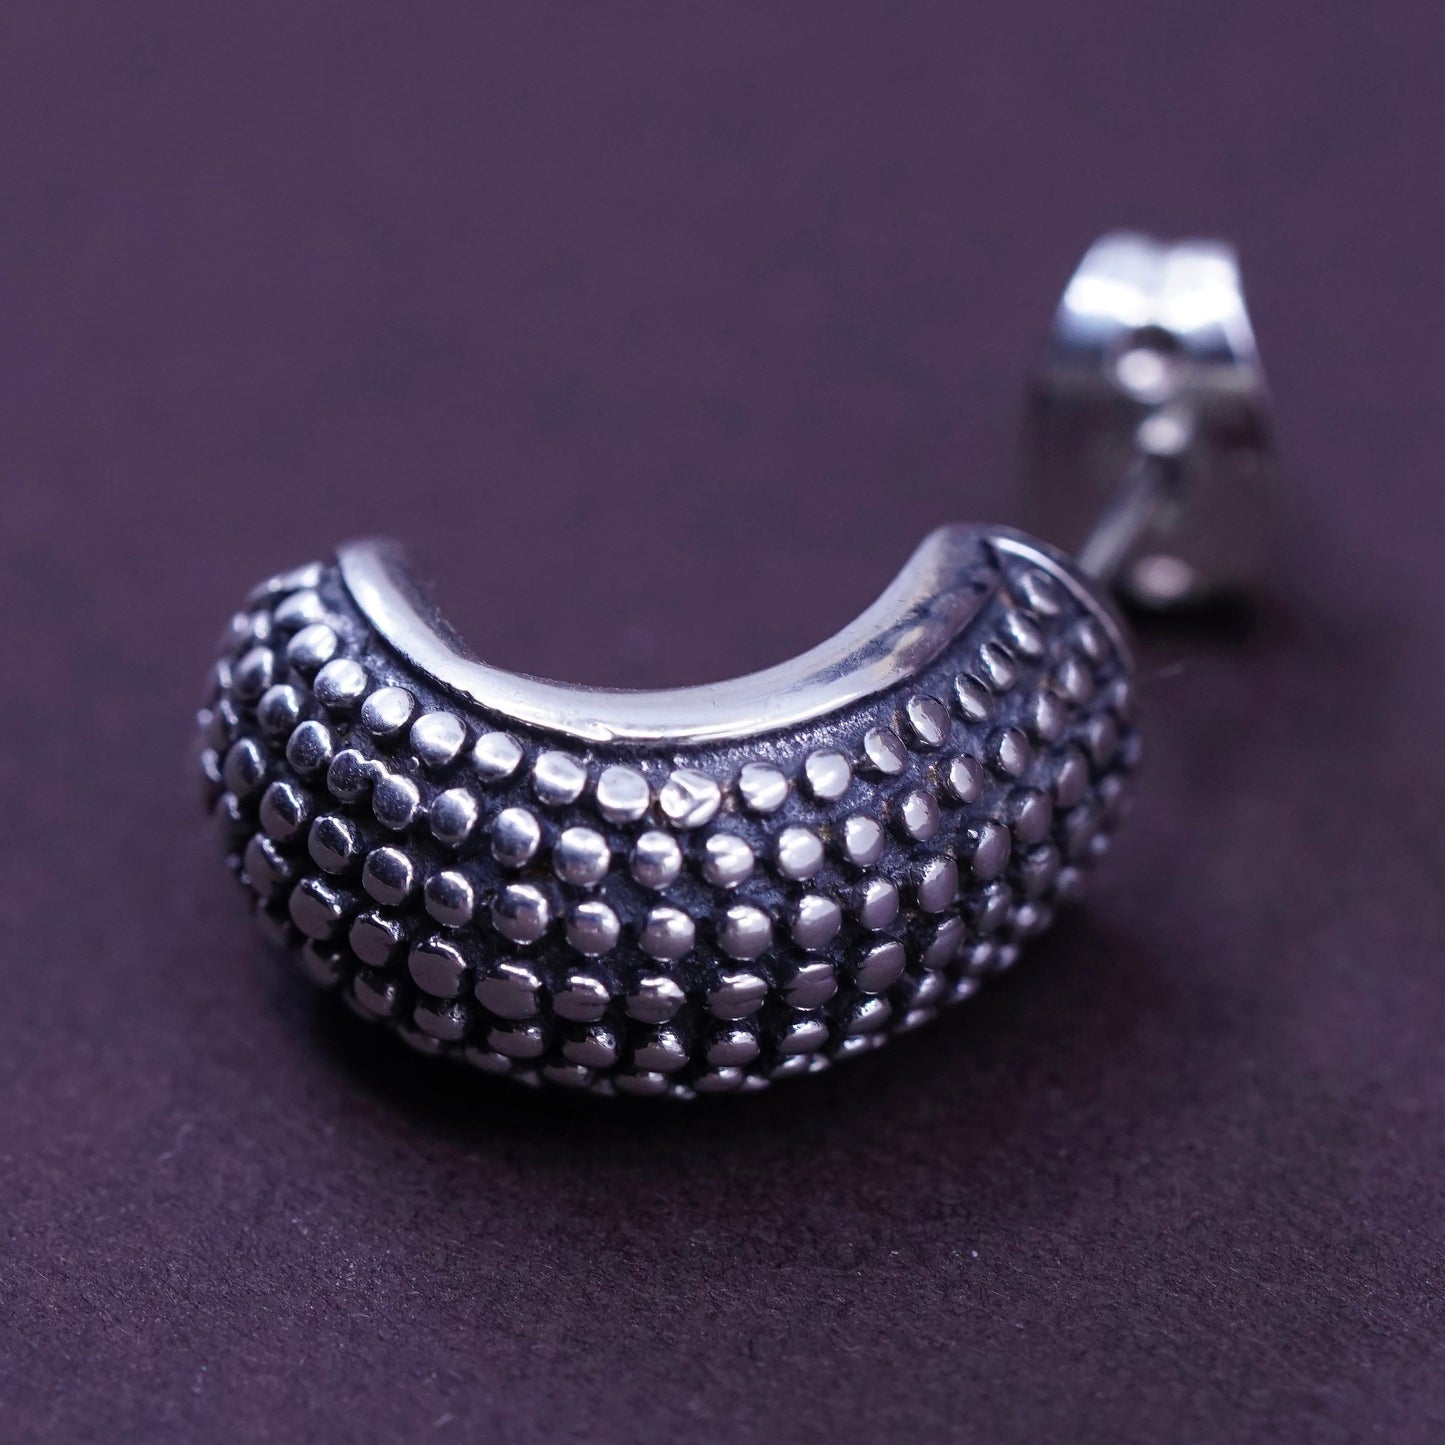 0.5”, vintage Sterling silver handmade earrings, 925 textured hoops